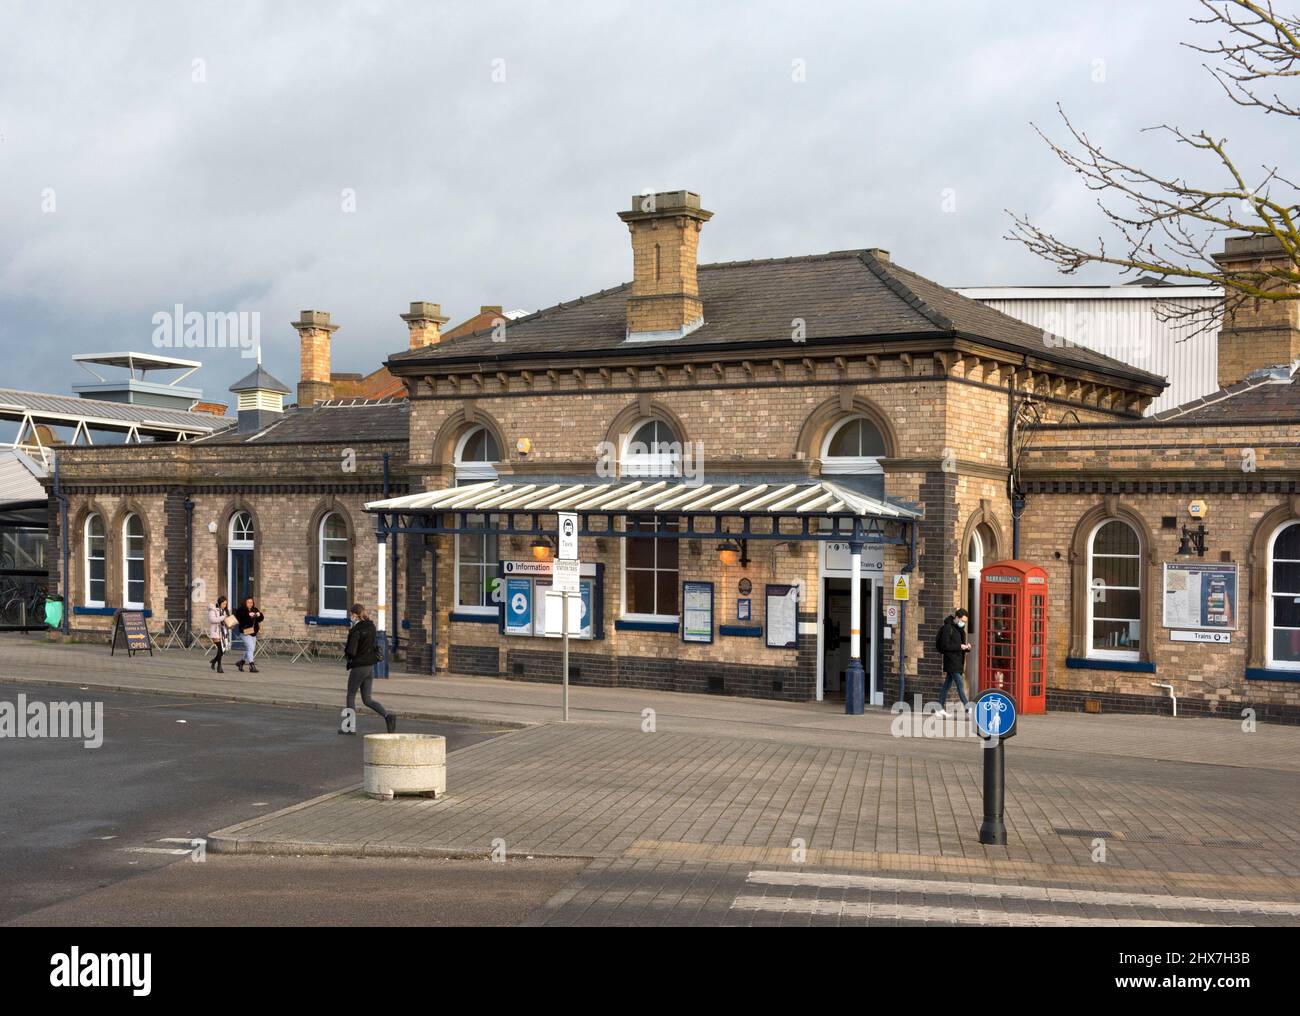 Stazione ferroviaria di Loughborough, Borough of Charnwood Leicestershire, Inghilterra Foto Stock